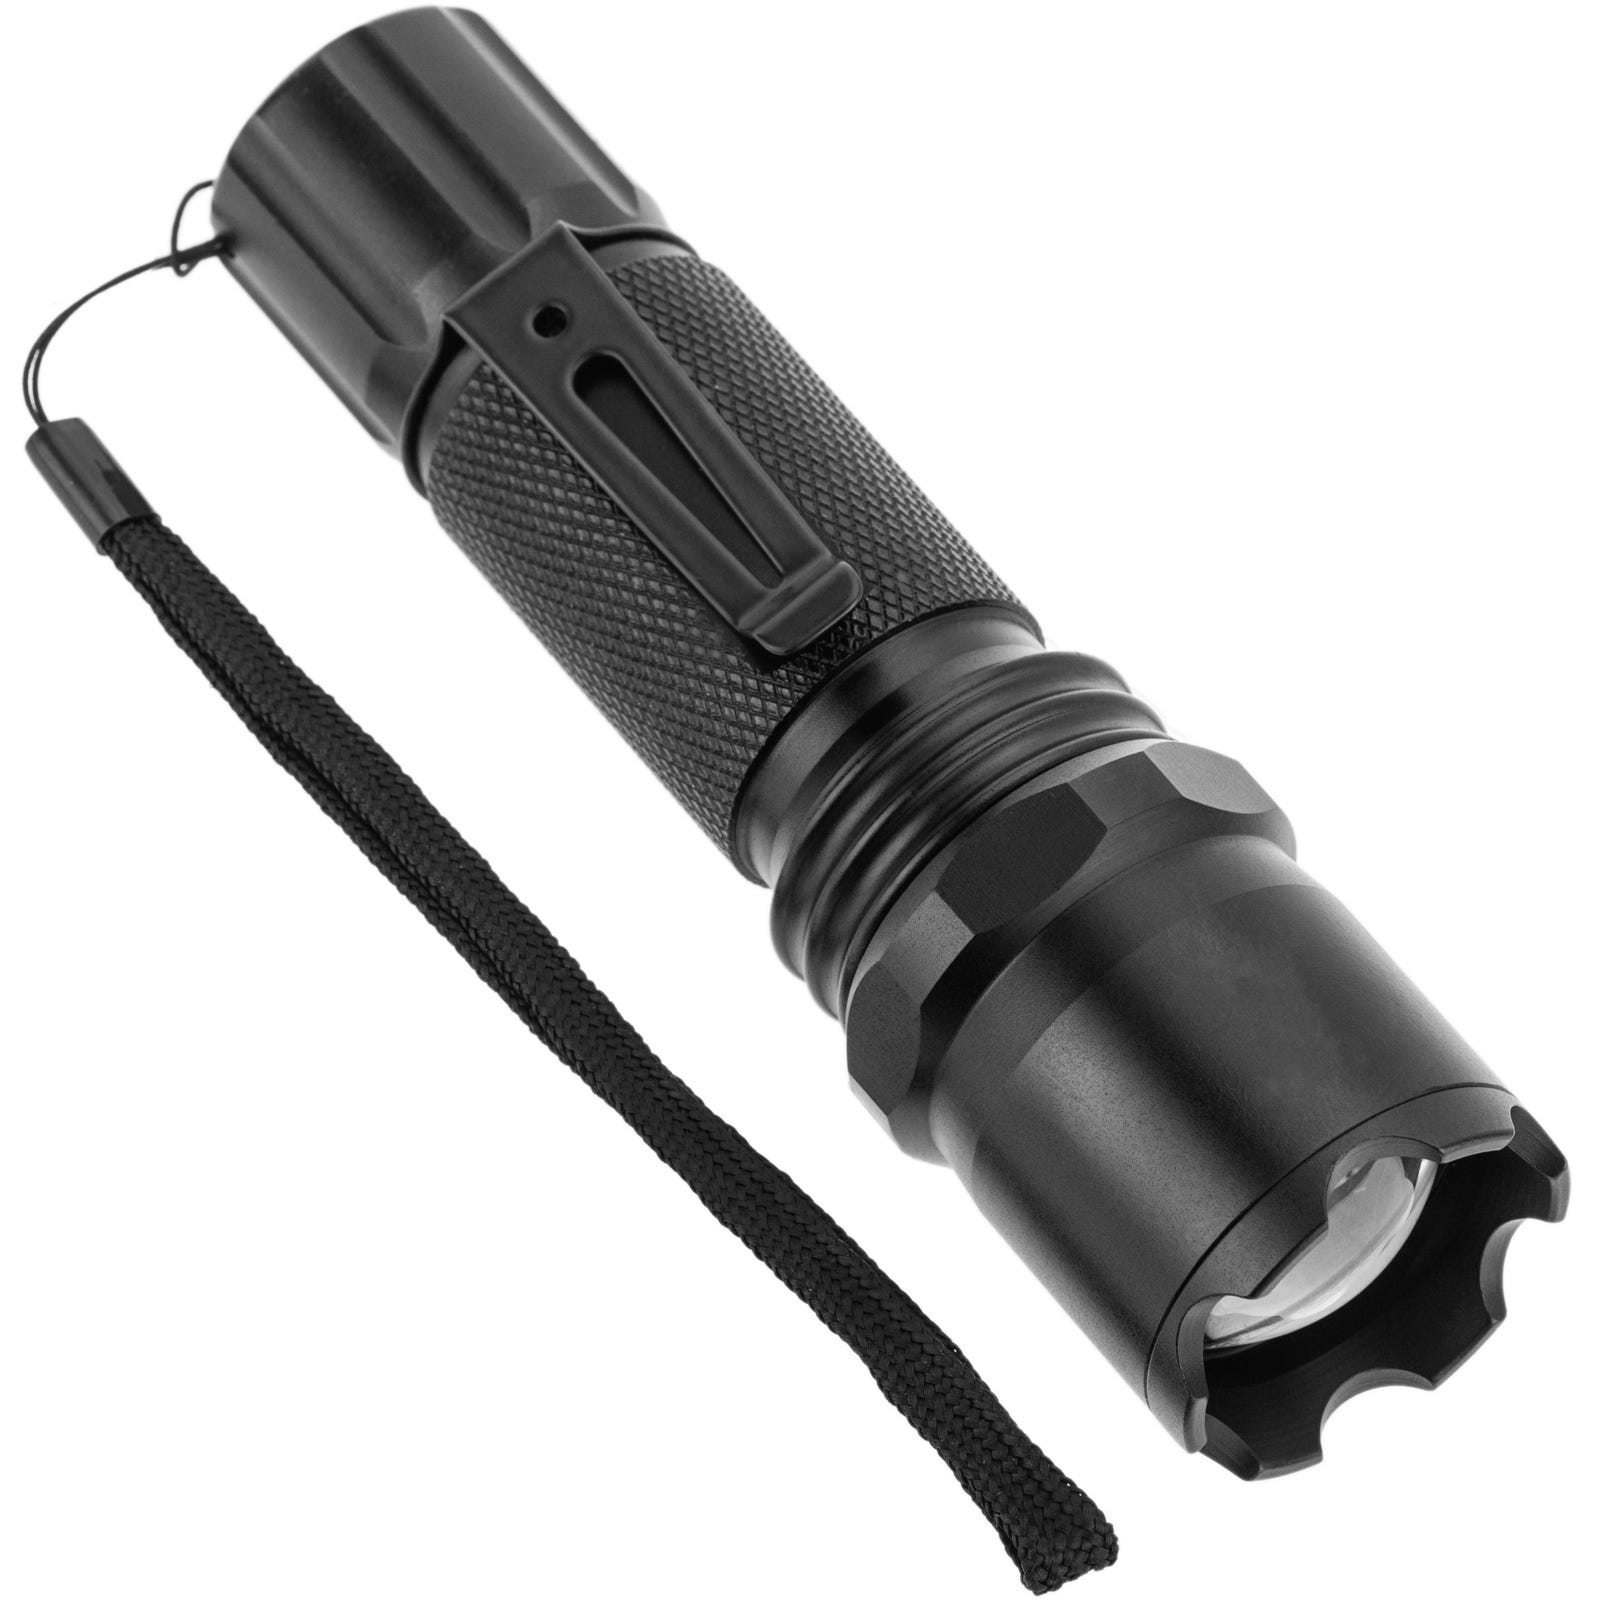 Torcia LED tascabile compatta con potenza 10W e protezione IP44